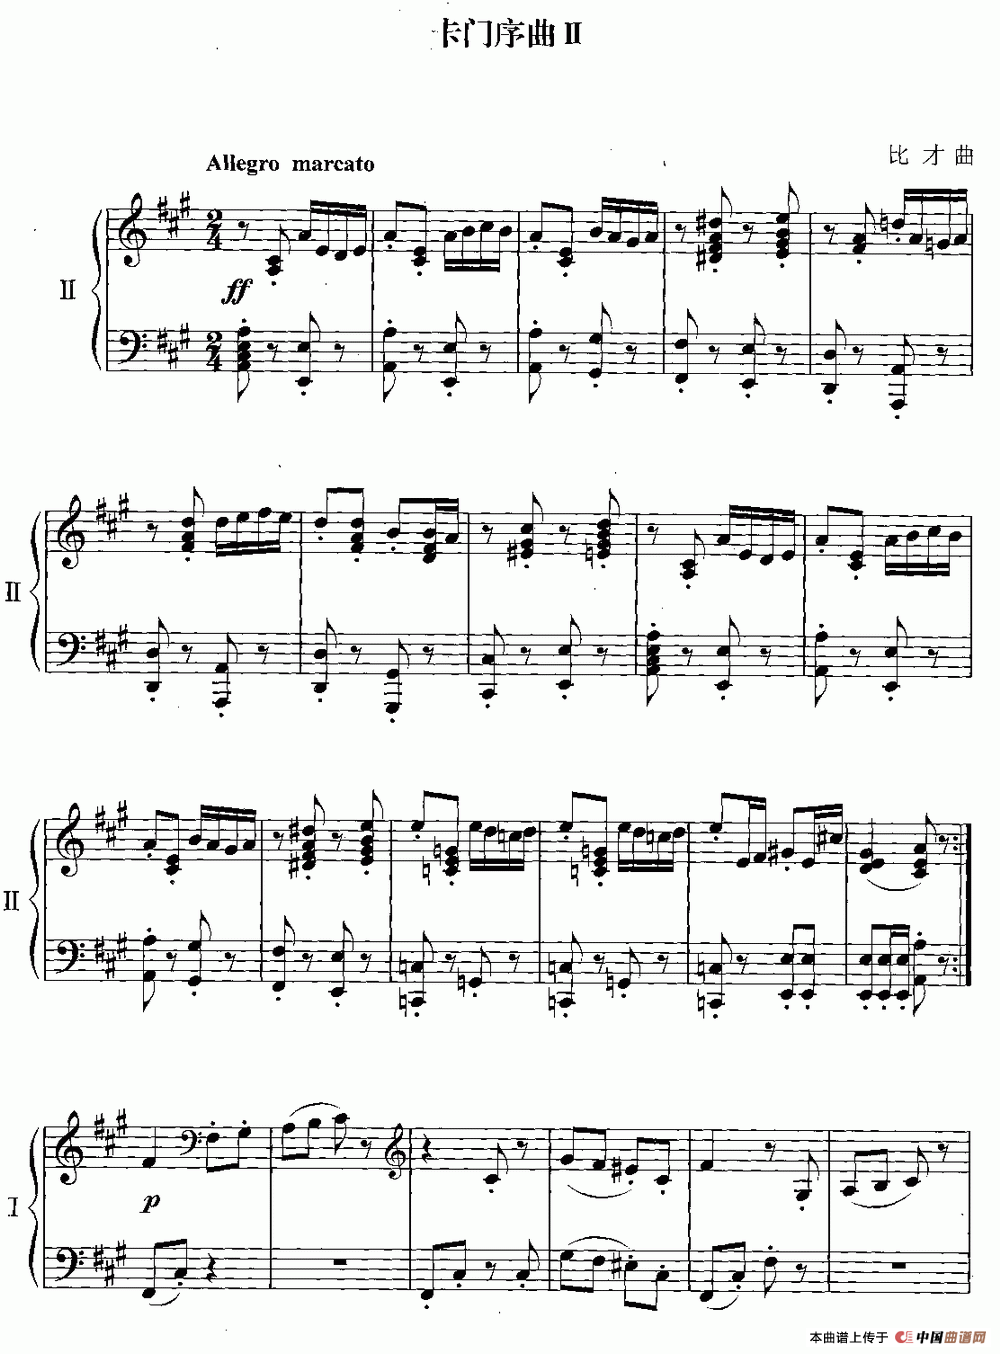 《卡门序曲》钢琴曲谱图分享